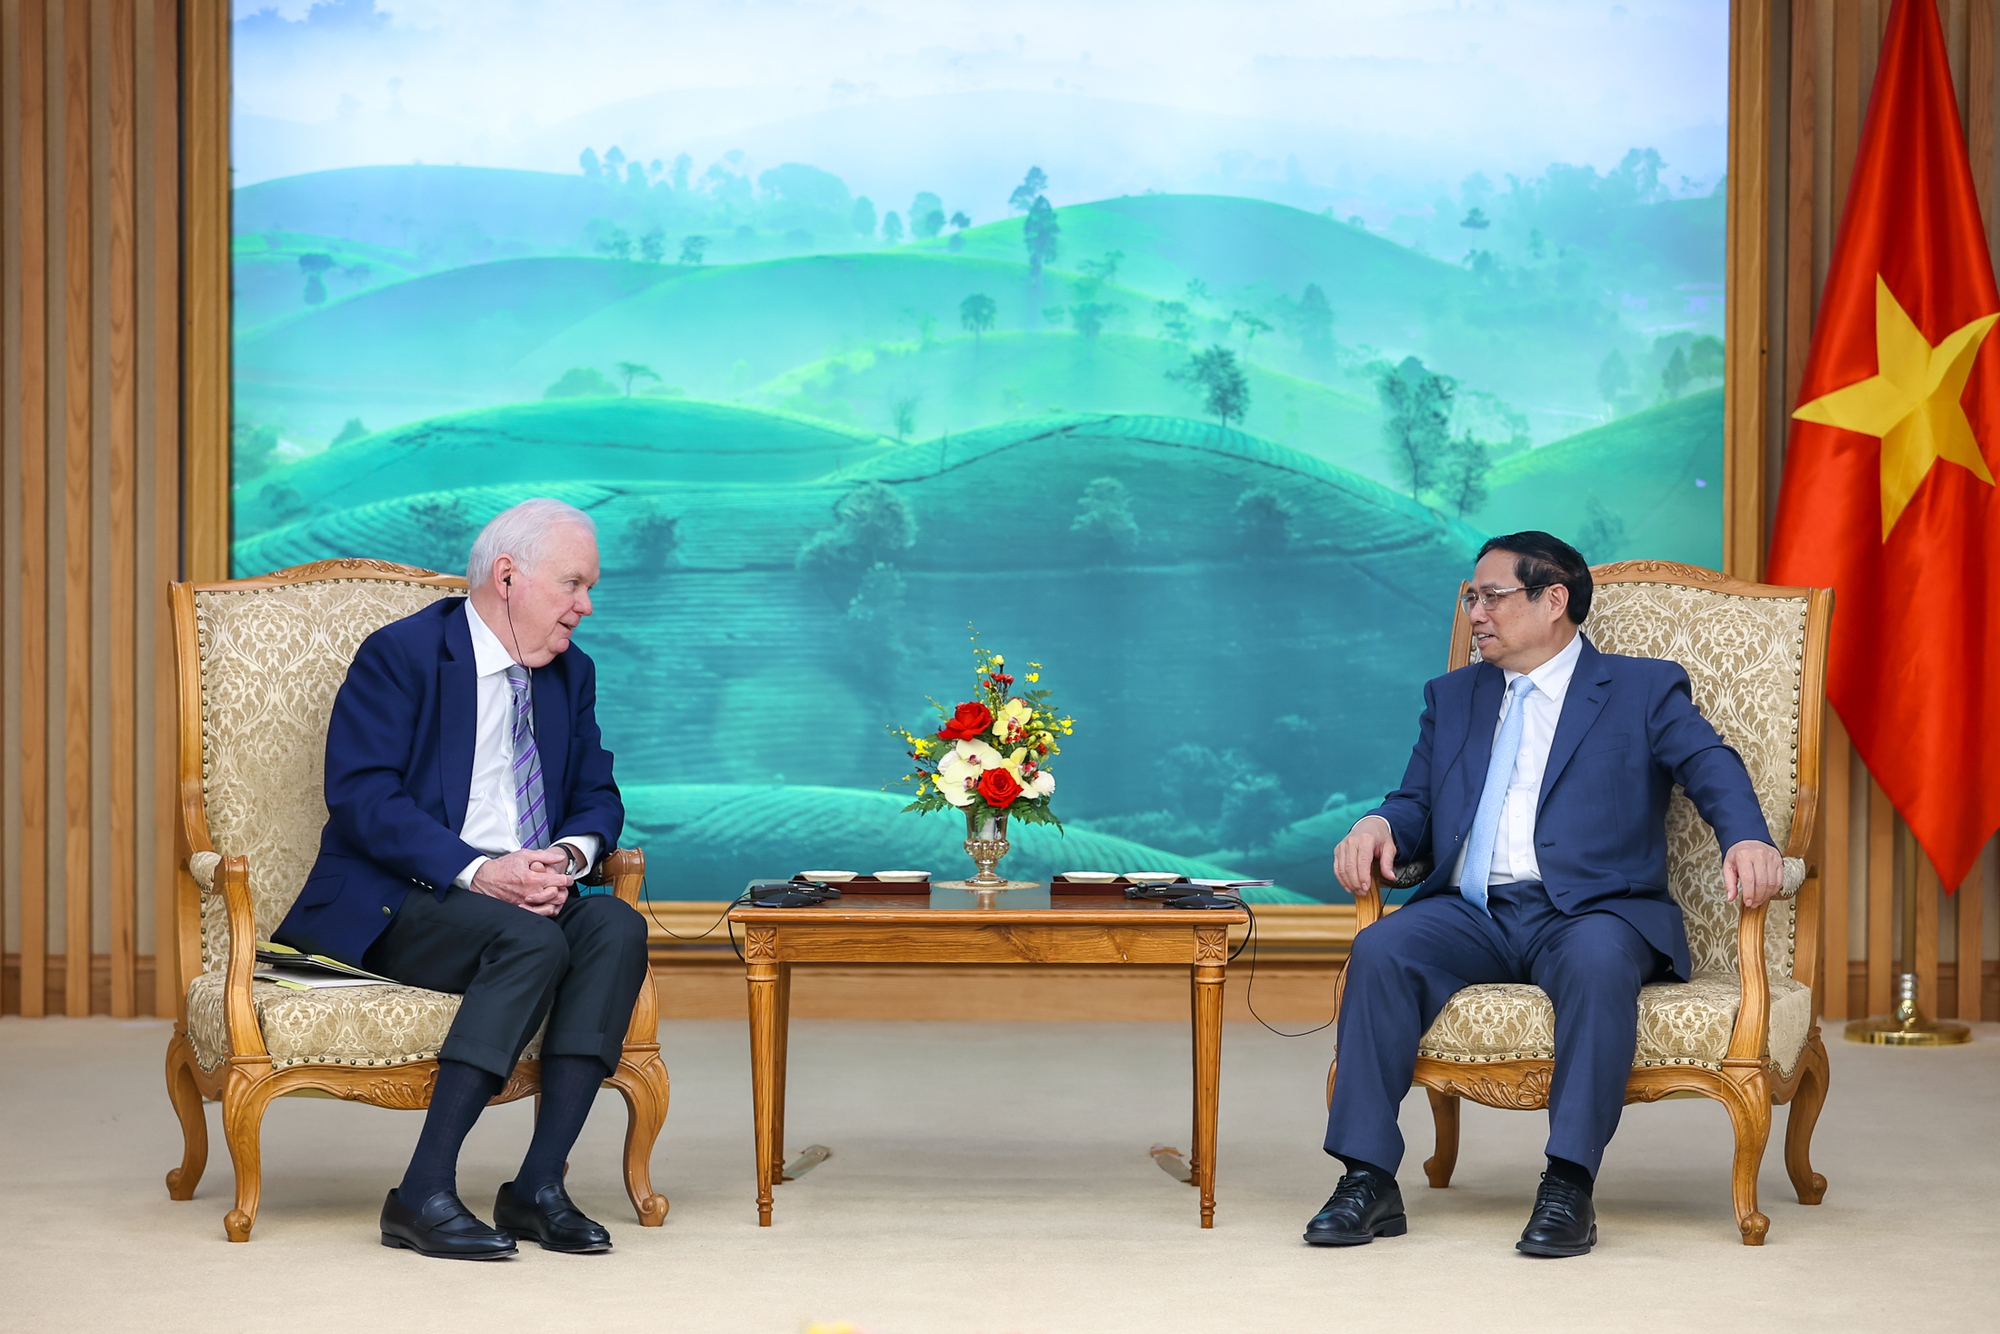 Thủ tướng đề nghị ông Thomas Vallely và Chương trình Việt Nam tại Đại học Harvard tiếp tục tư vấn chính sách phát triển kinh tế-xã hội, xây dựng các hoạt động đối thoại chính sách phù hợp; hợp tác, hỗ trợ Việt Nam đào tạo nhân lực; kết nối các đối tác, nhà đầu tư về bán dẫn, AI tới Việt Nam… - Ảnh: VGP/Nhật Bắc